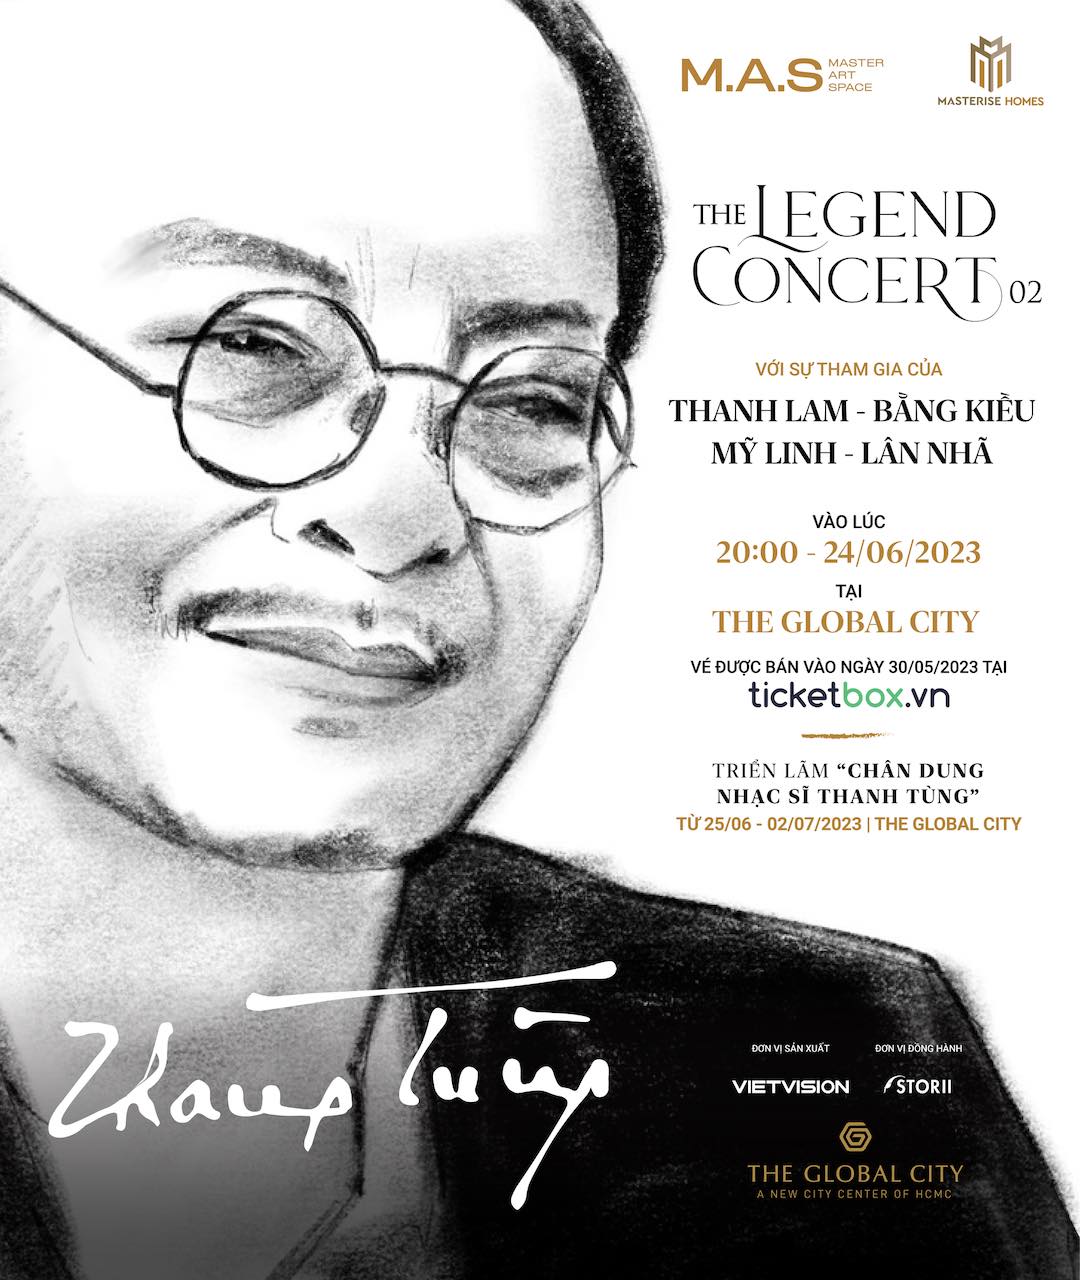 THE GLOBAL CITY | The Legend Concert 02 - Nhạc sĩ Thanh Tùng